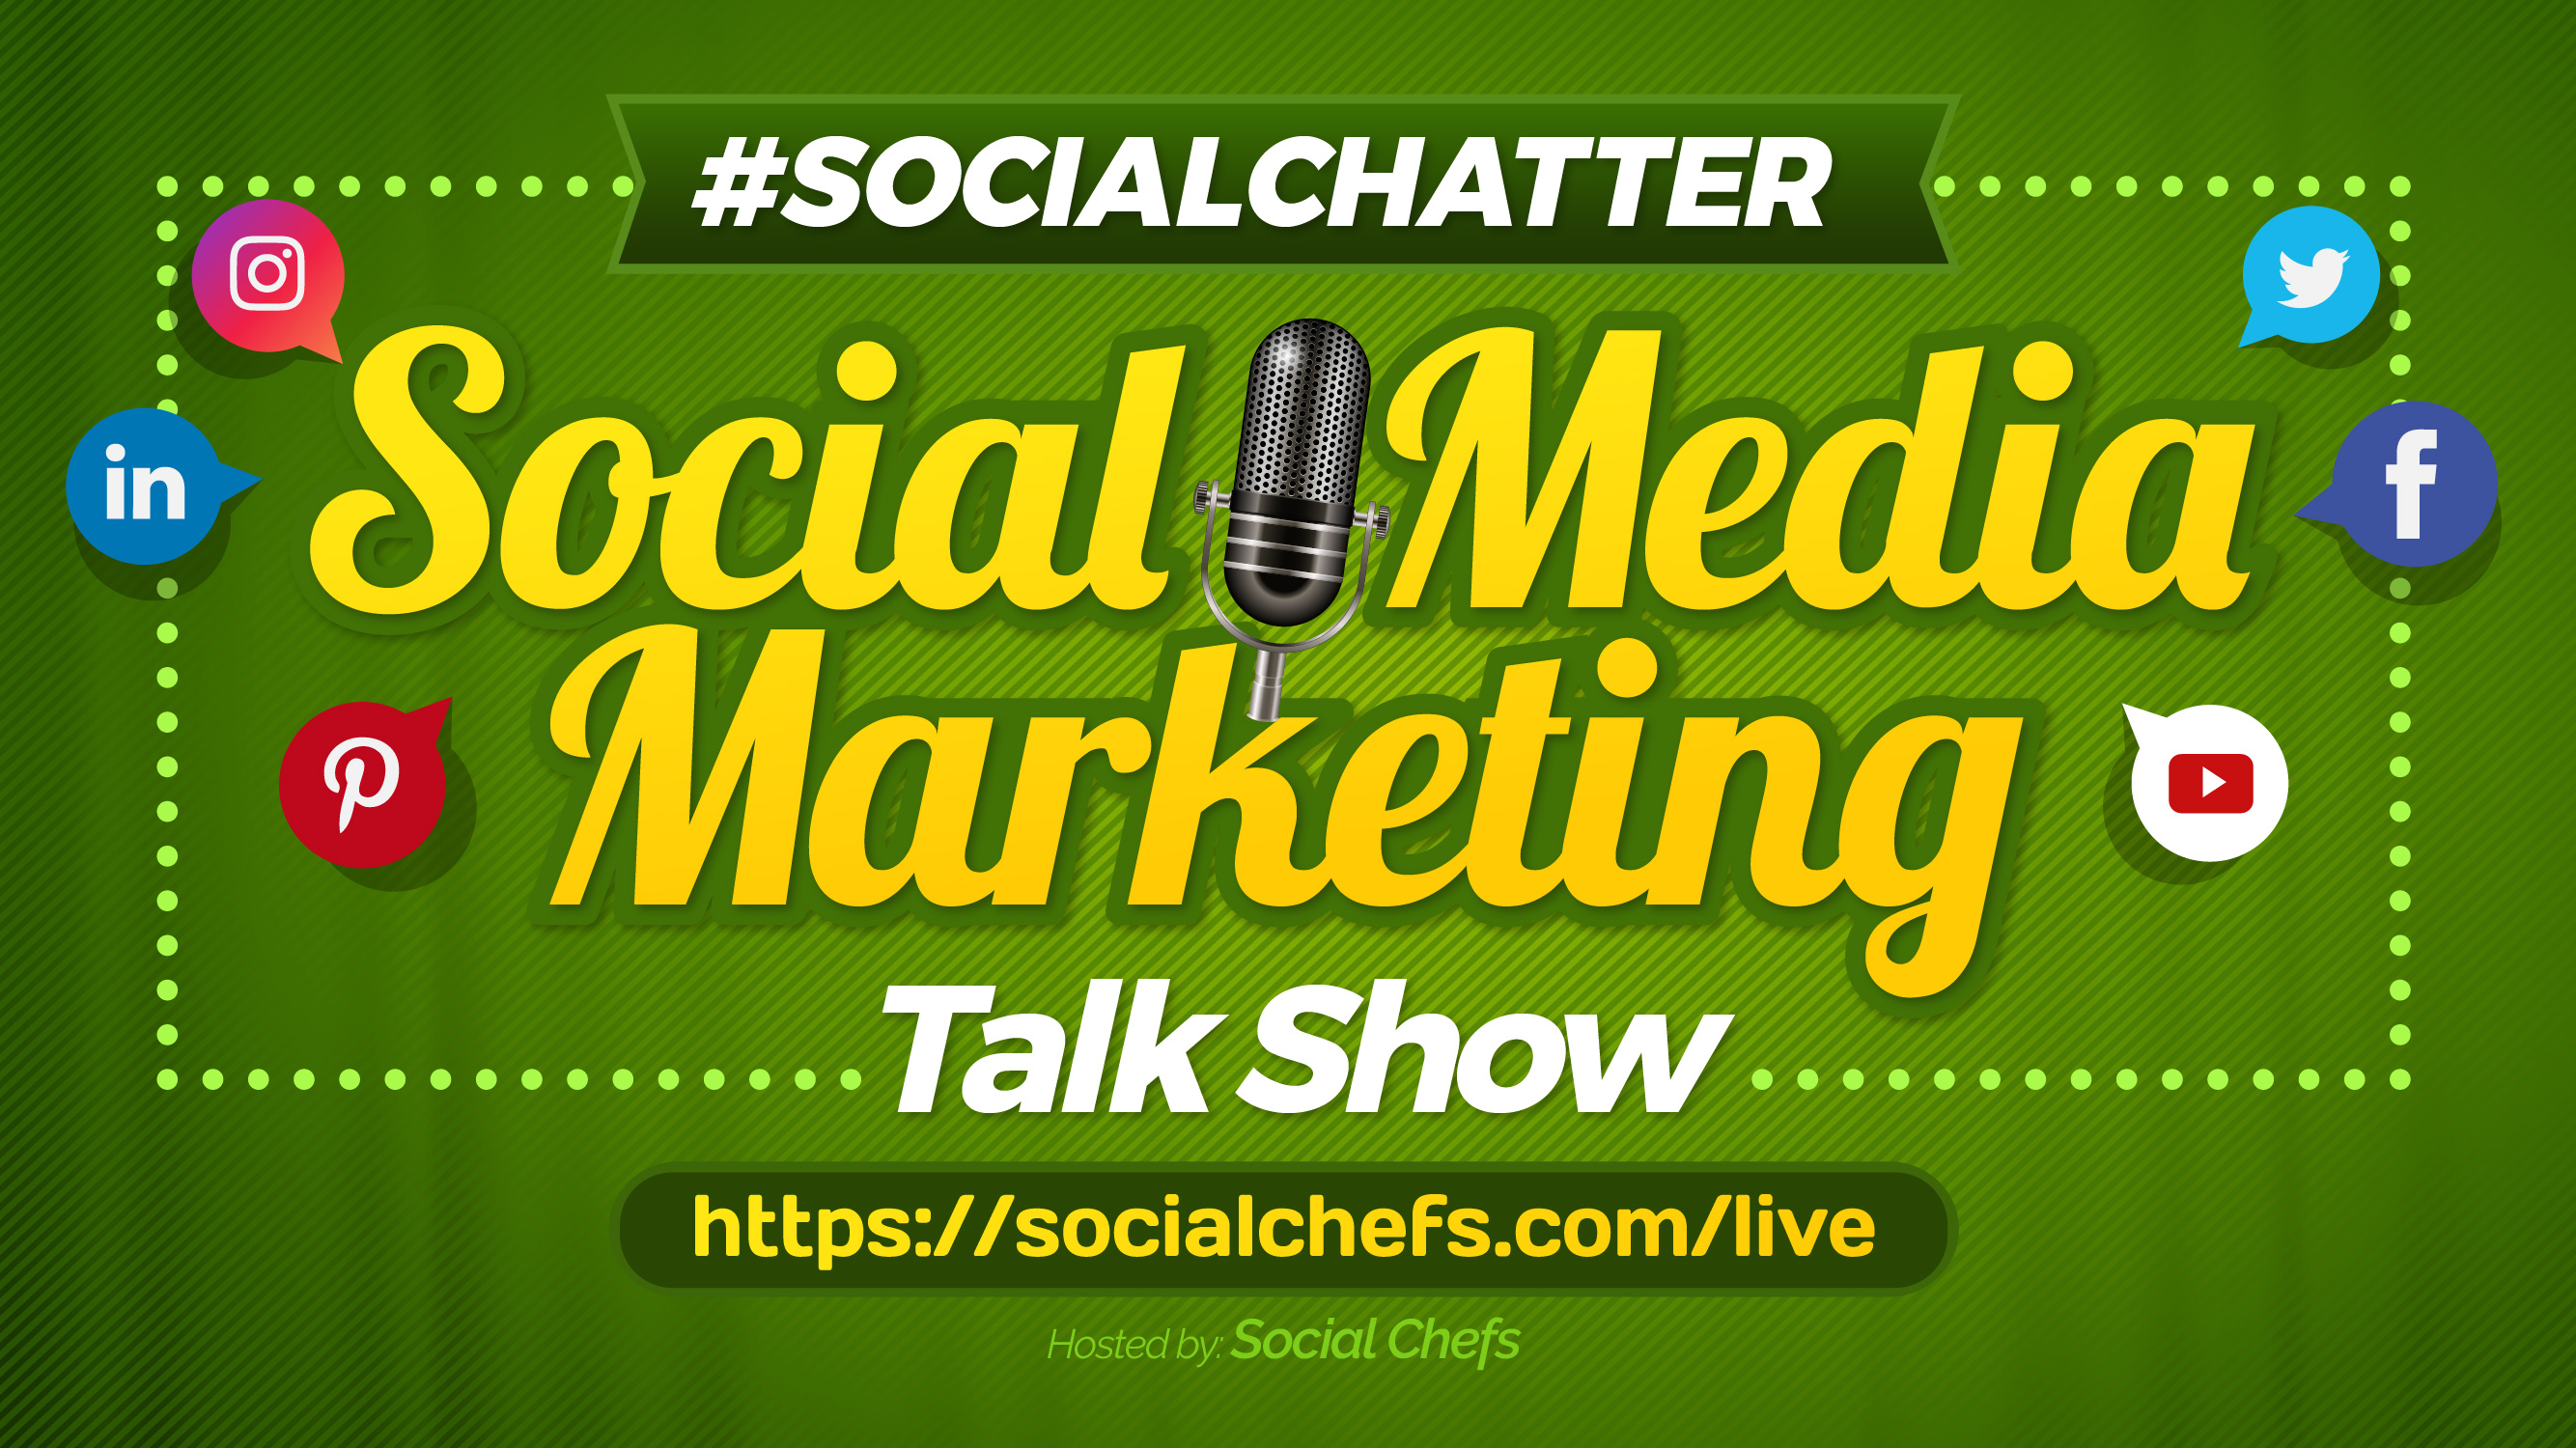 Social Media Marketing Talk Show - Social Chatter